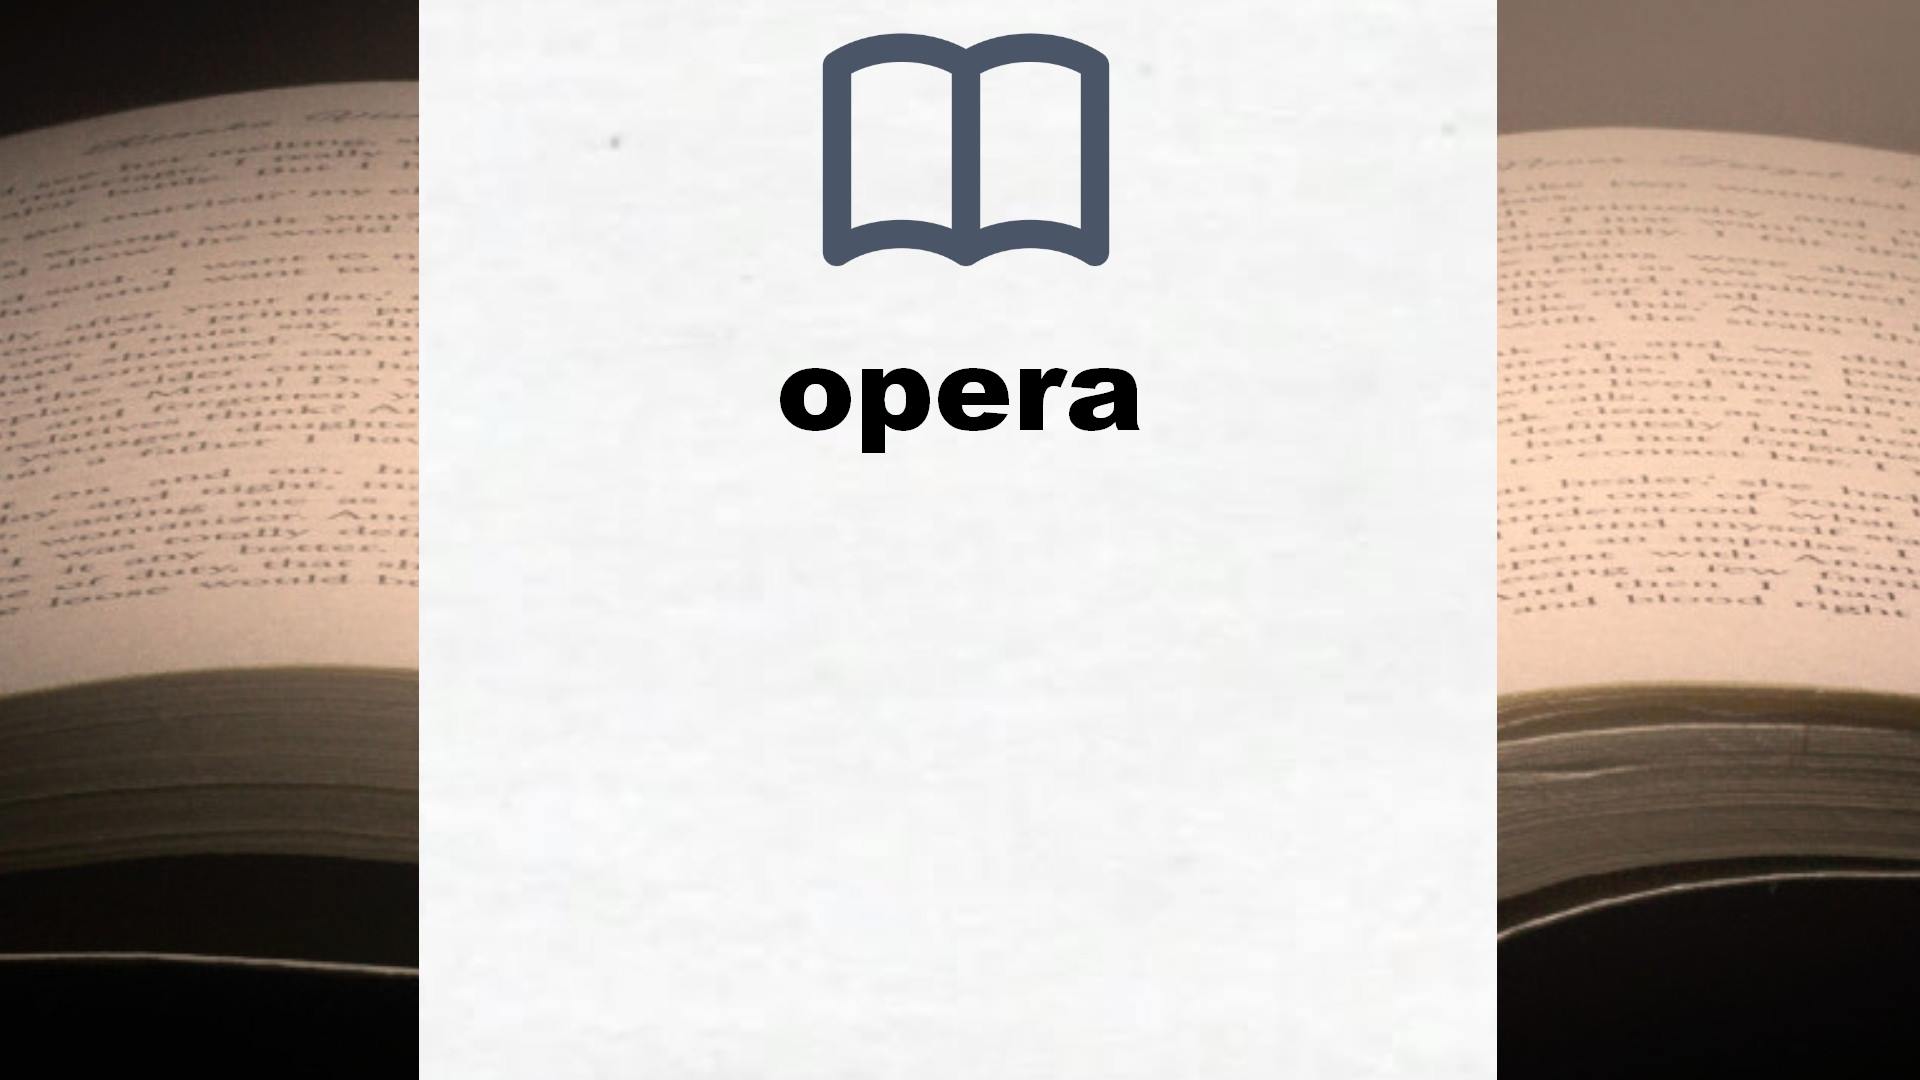 Libros sobre opera